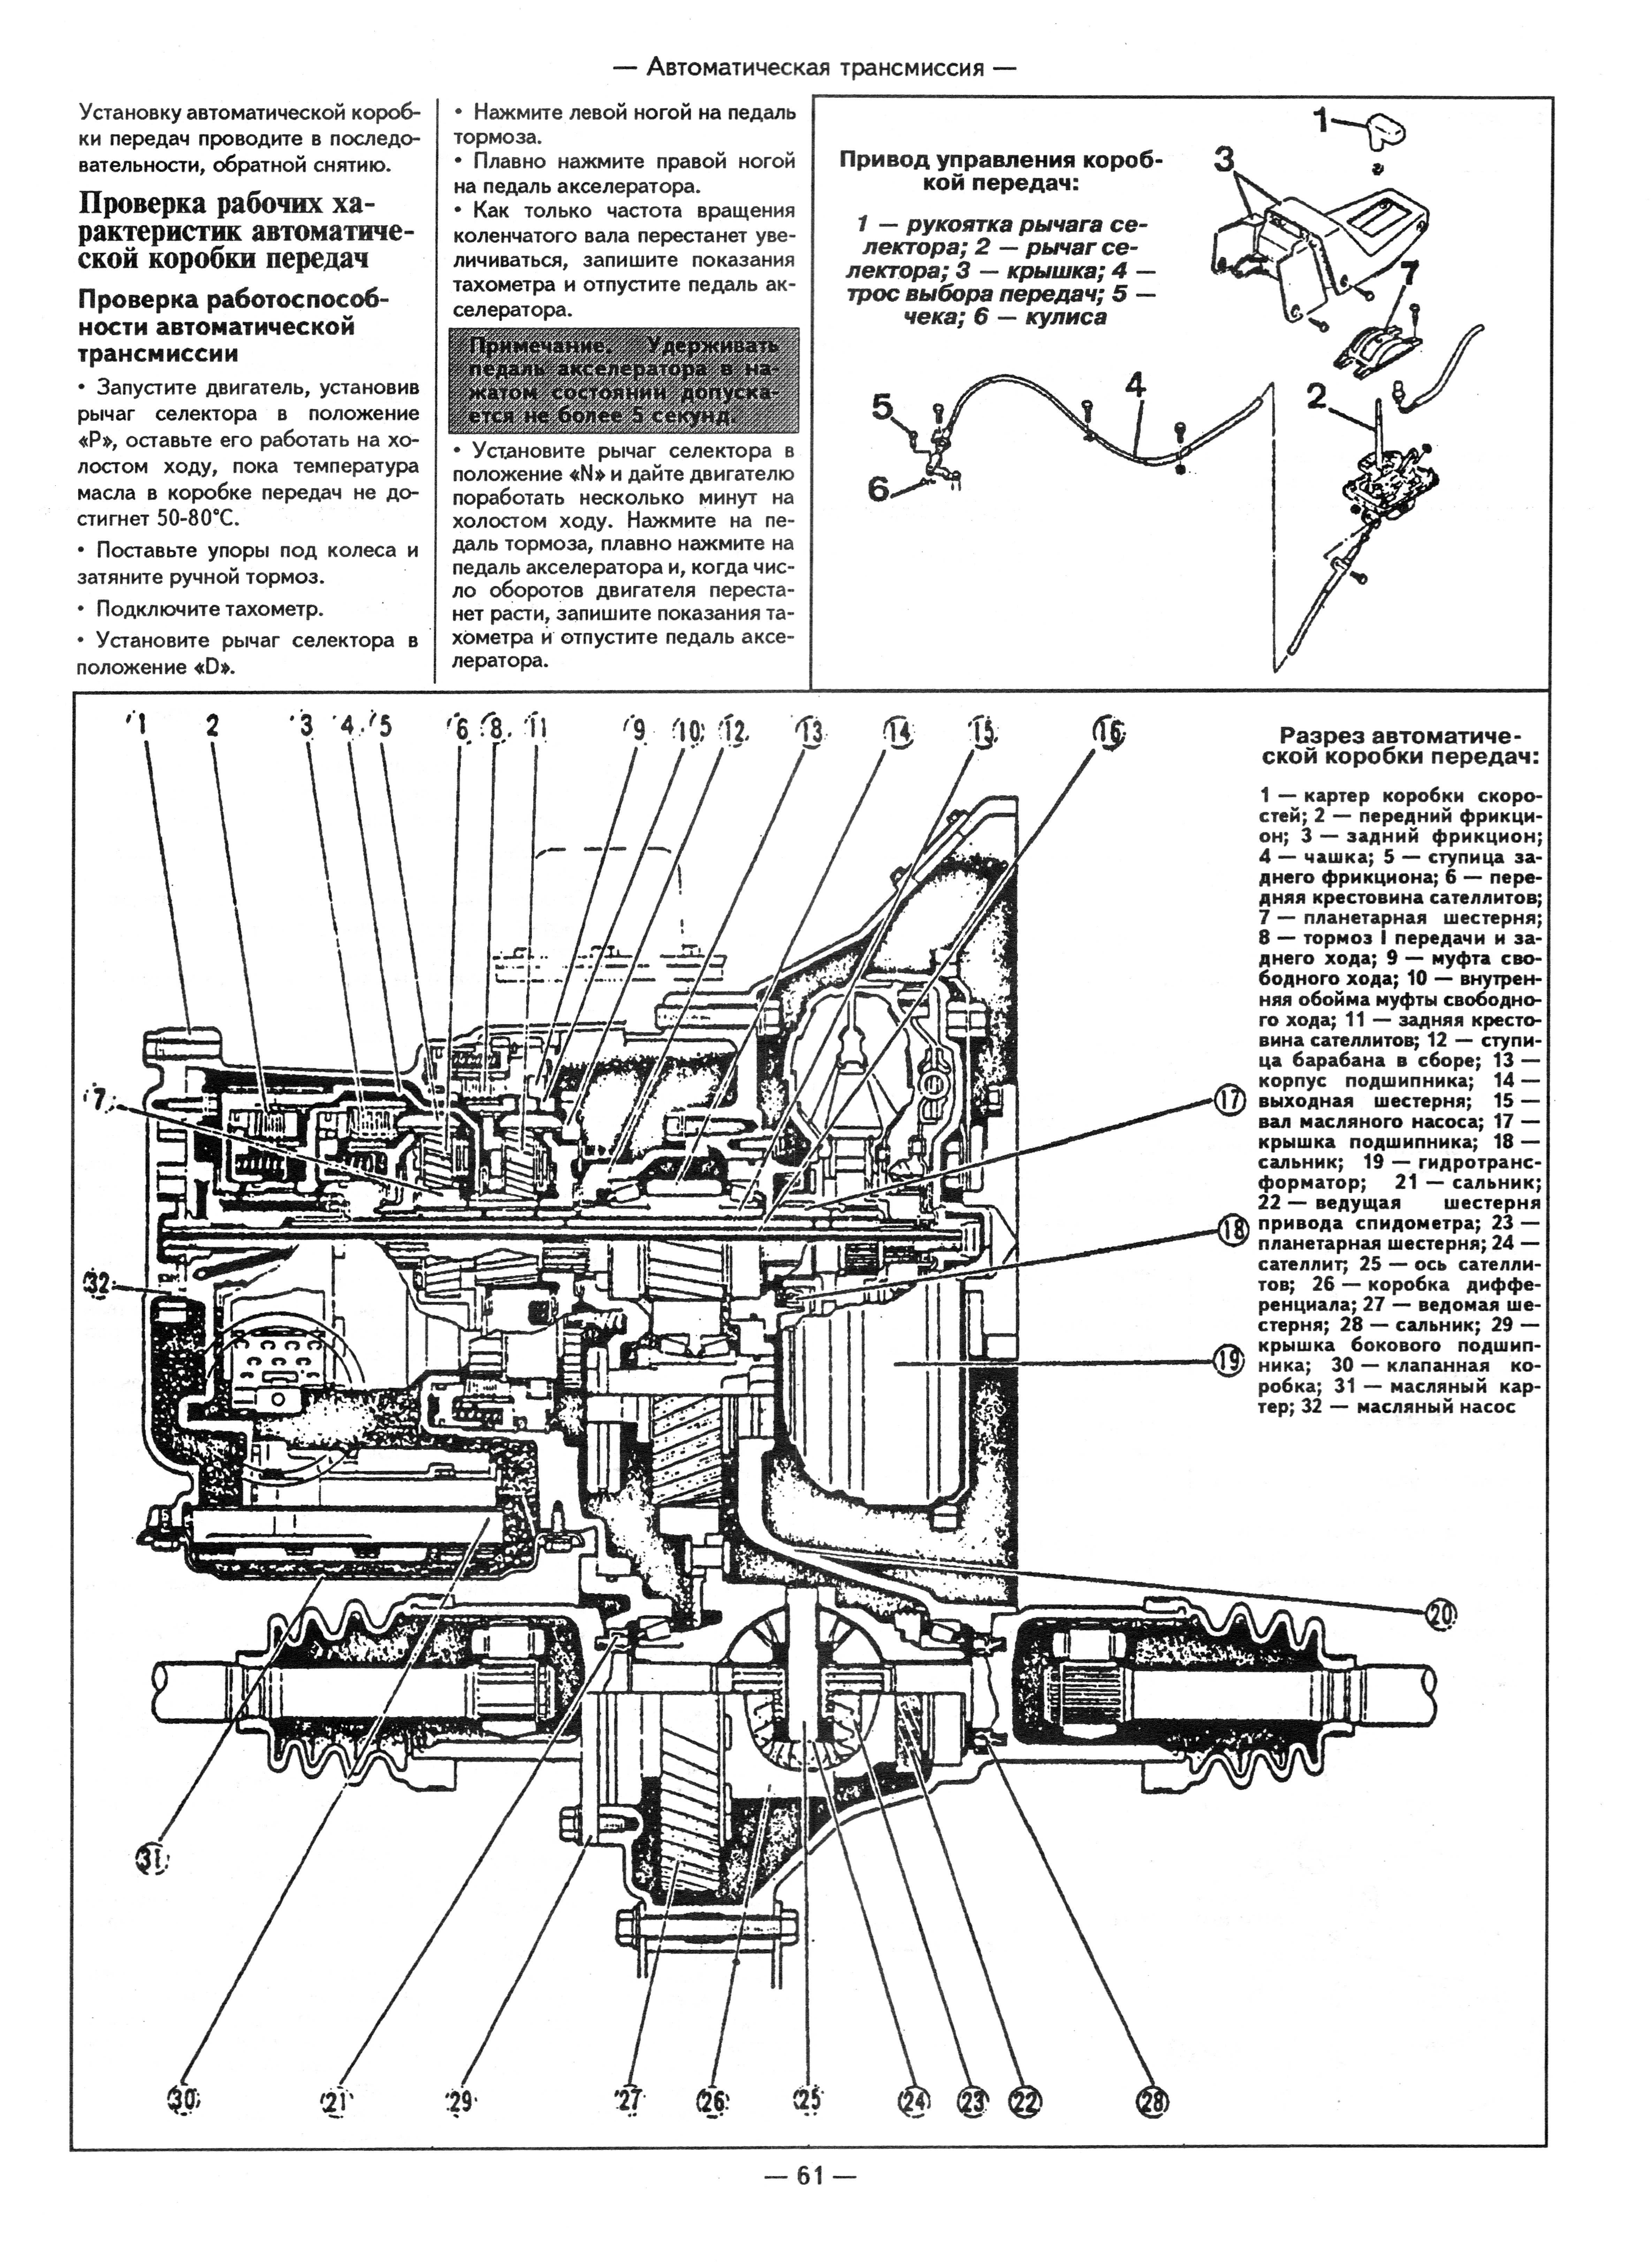 Mazda 323. Руководство по ремонту. Книга. Мазда 323